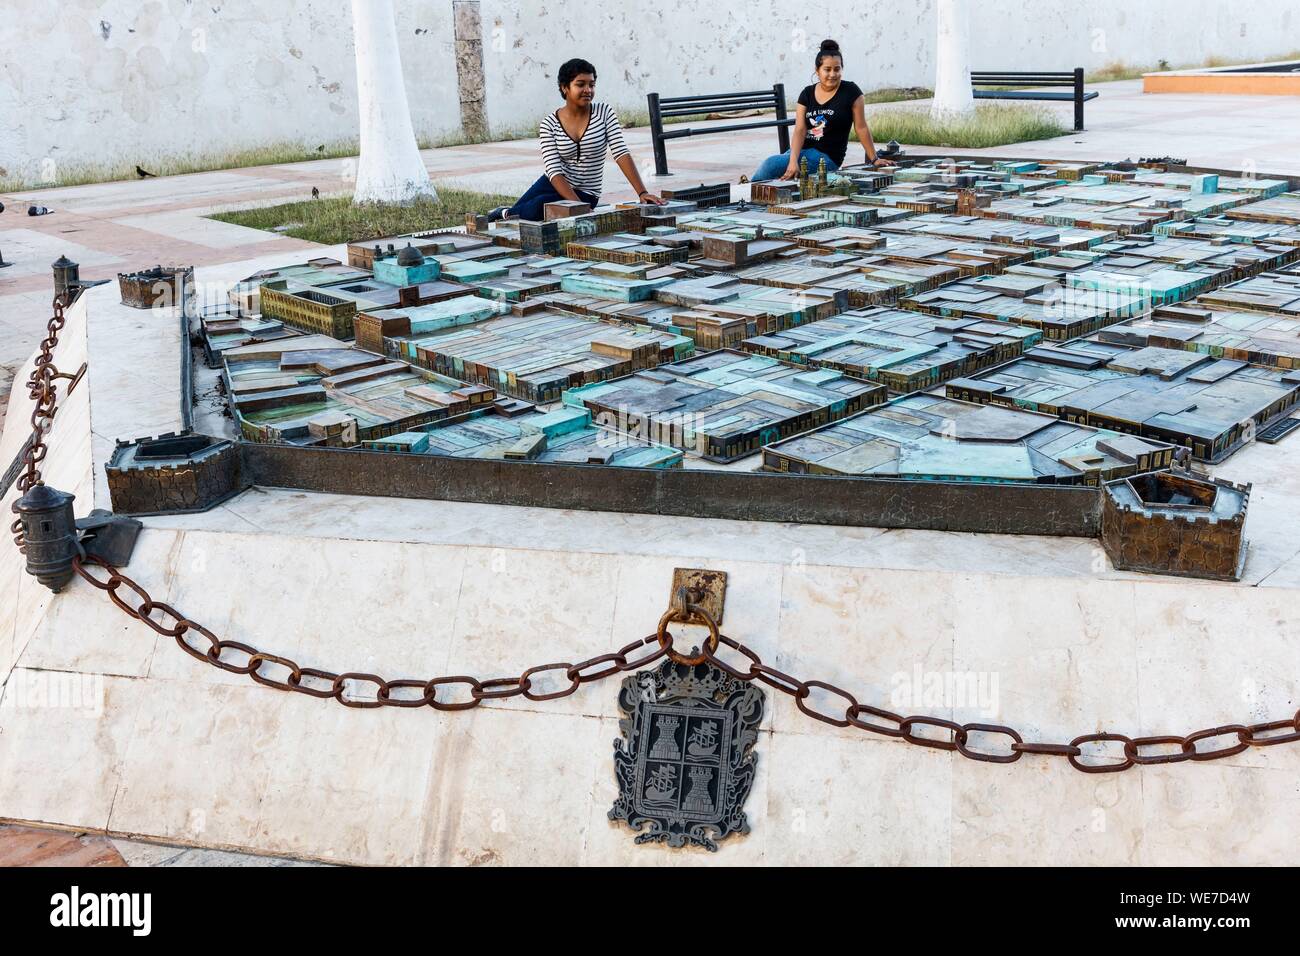 México, estado de Campeche, Campeche, ciudad fortificada listados como Patrimonio Mundial por la UNESCO, dos niñas viendo la ciudad boceto Foto de stock